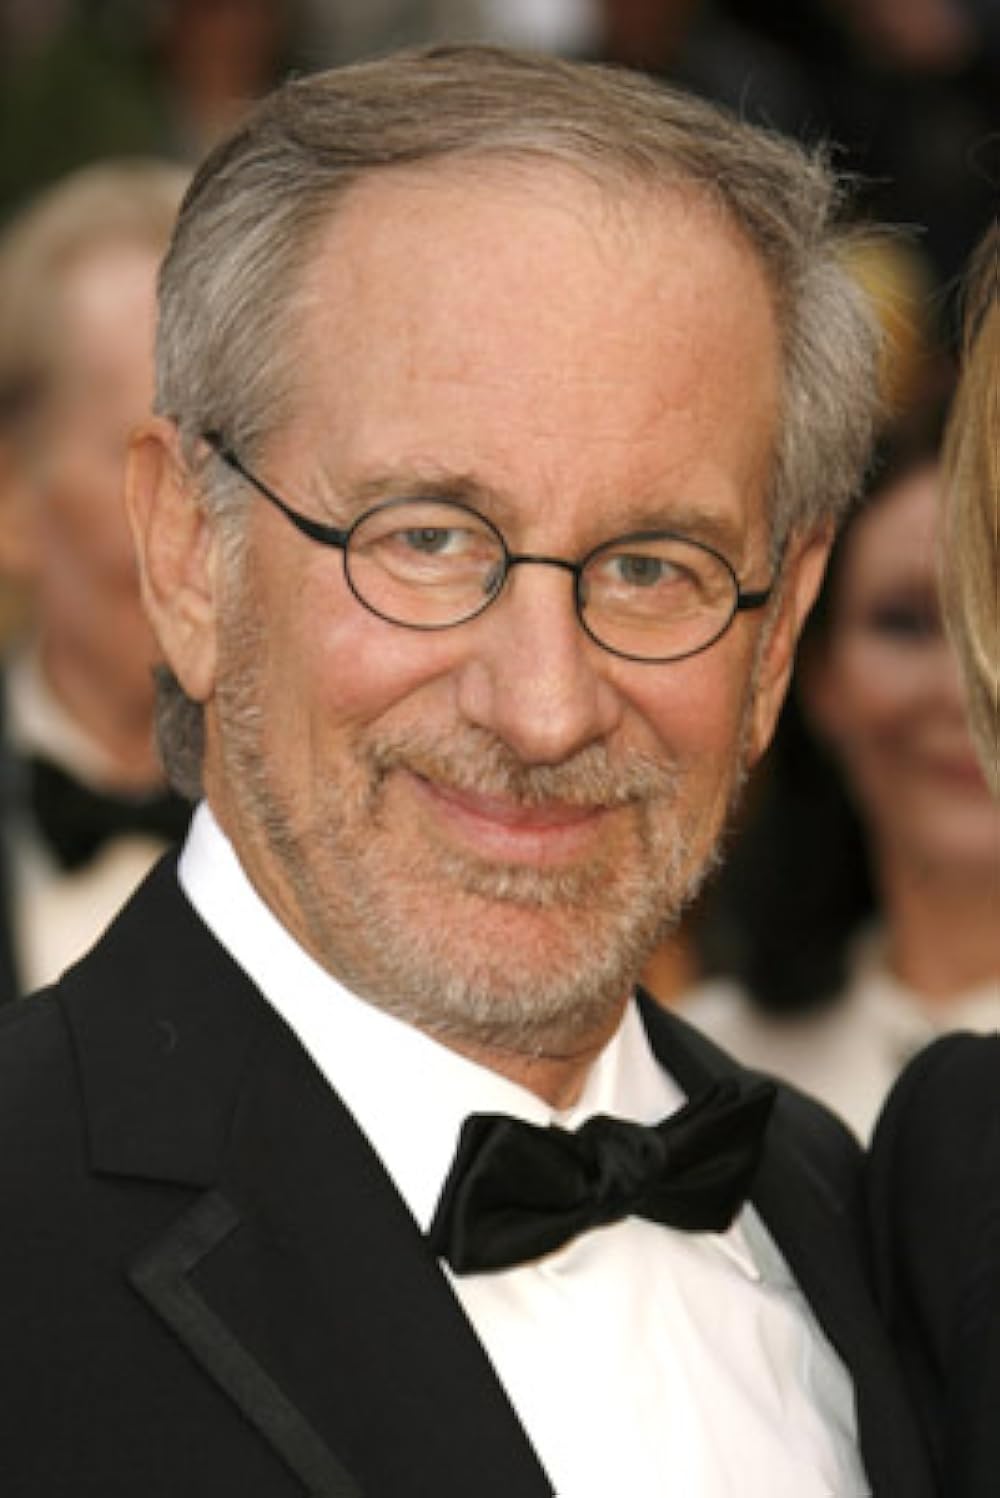 Steven Spielberg being still alive